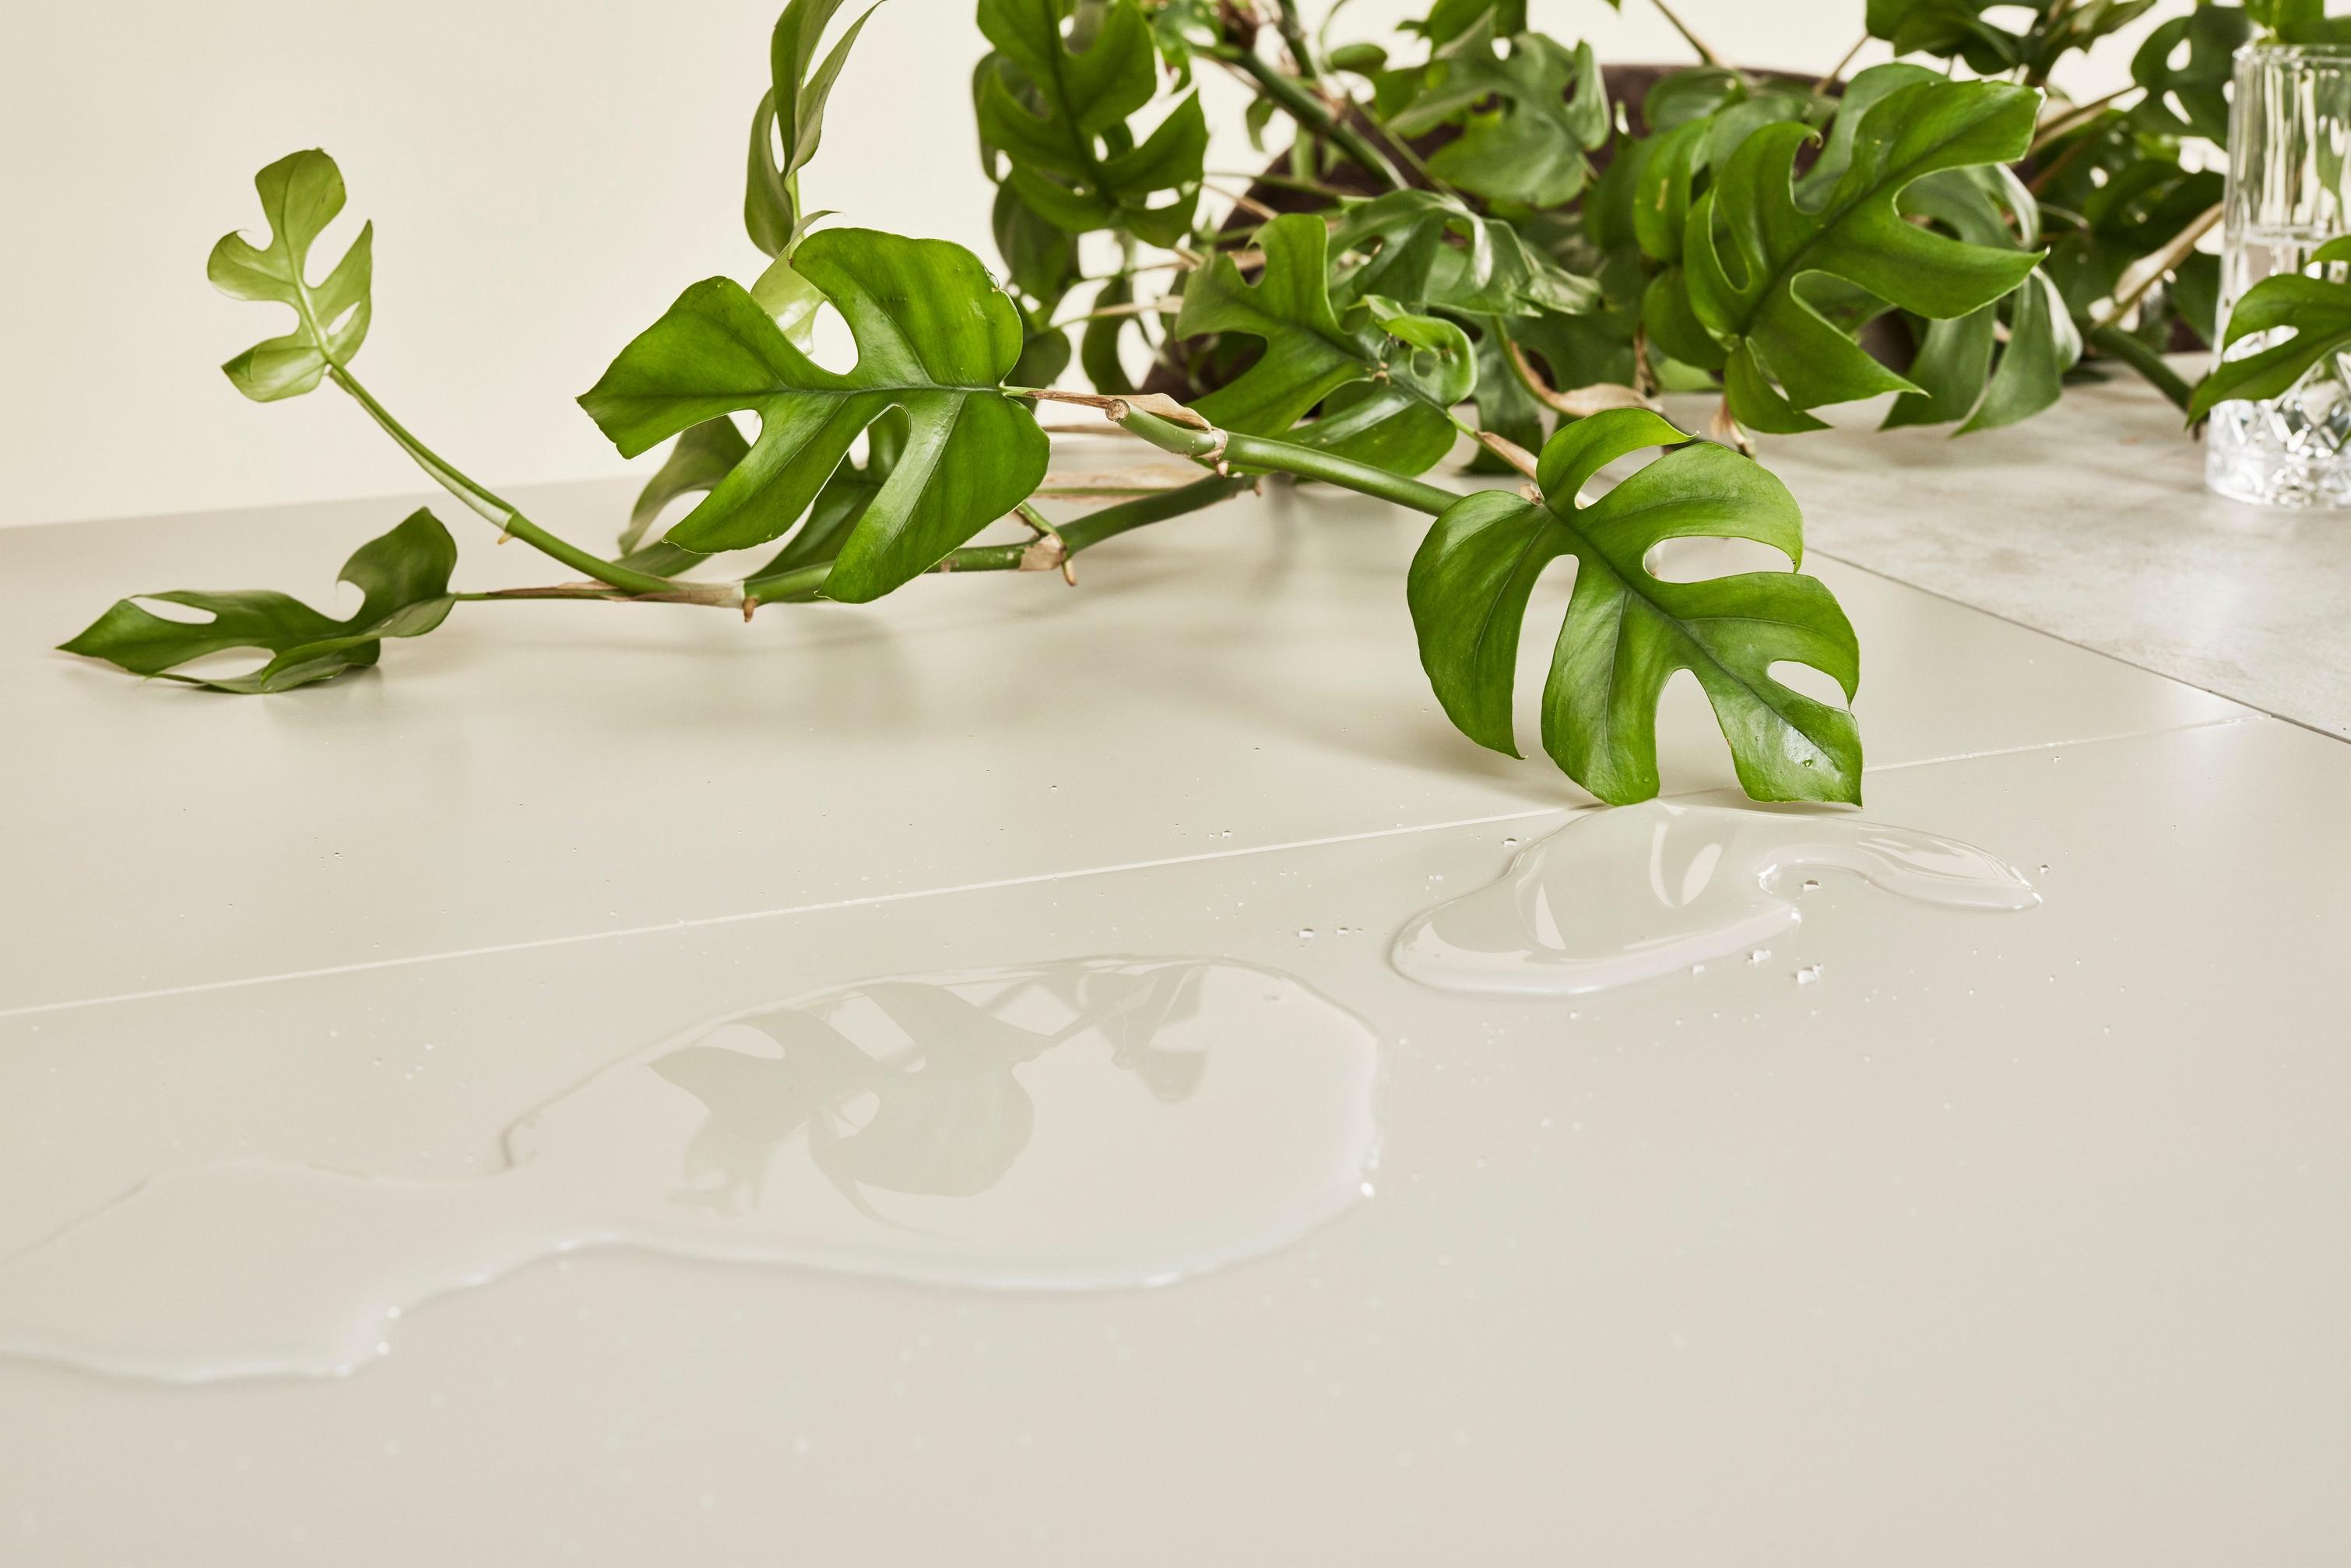 綠色 Monstera 在漆面桌子上，噴濺出的清水反射出葉子影像。